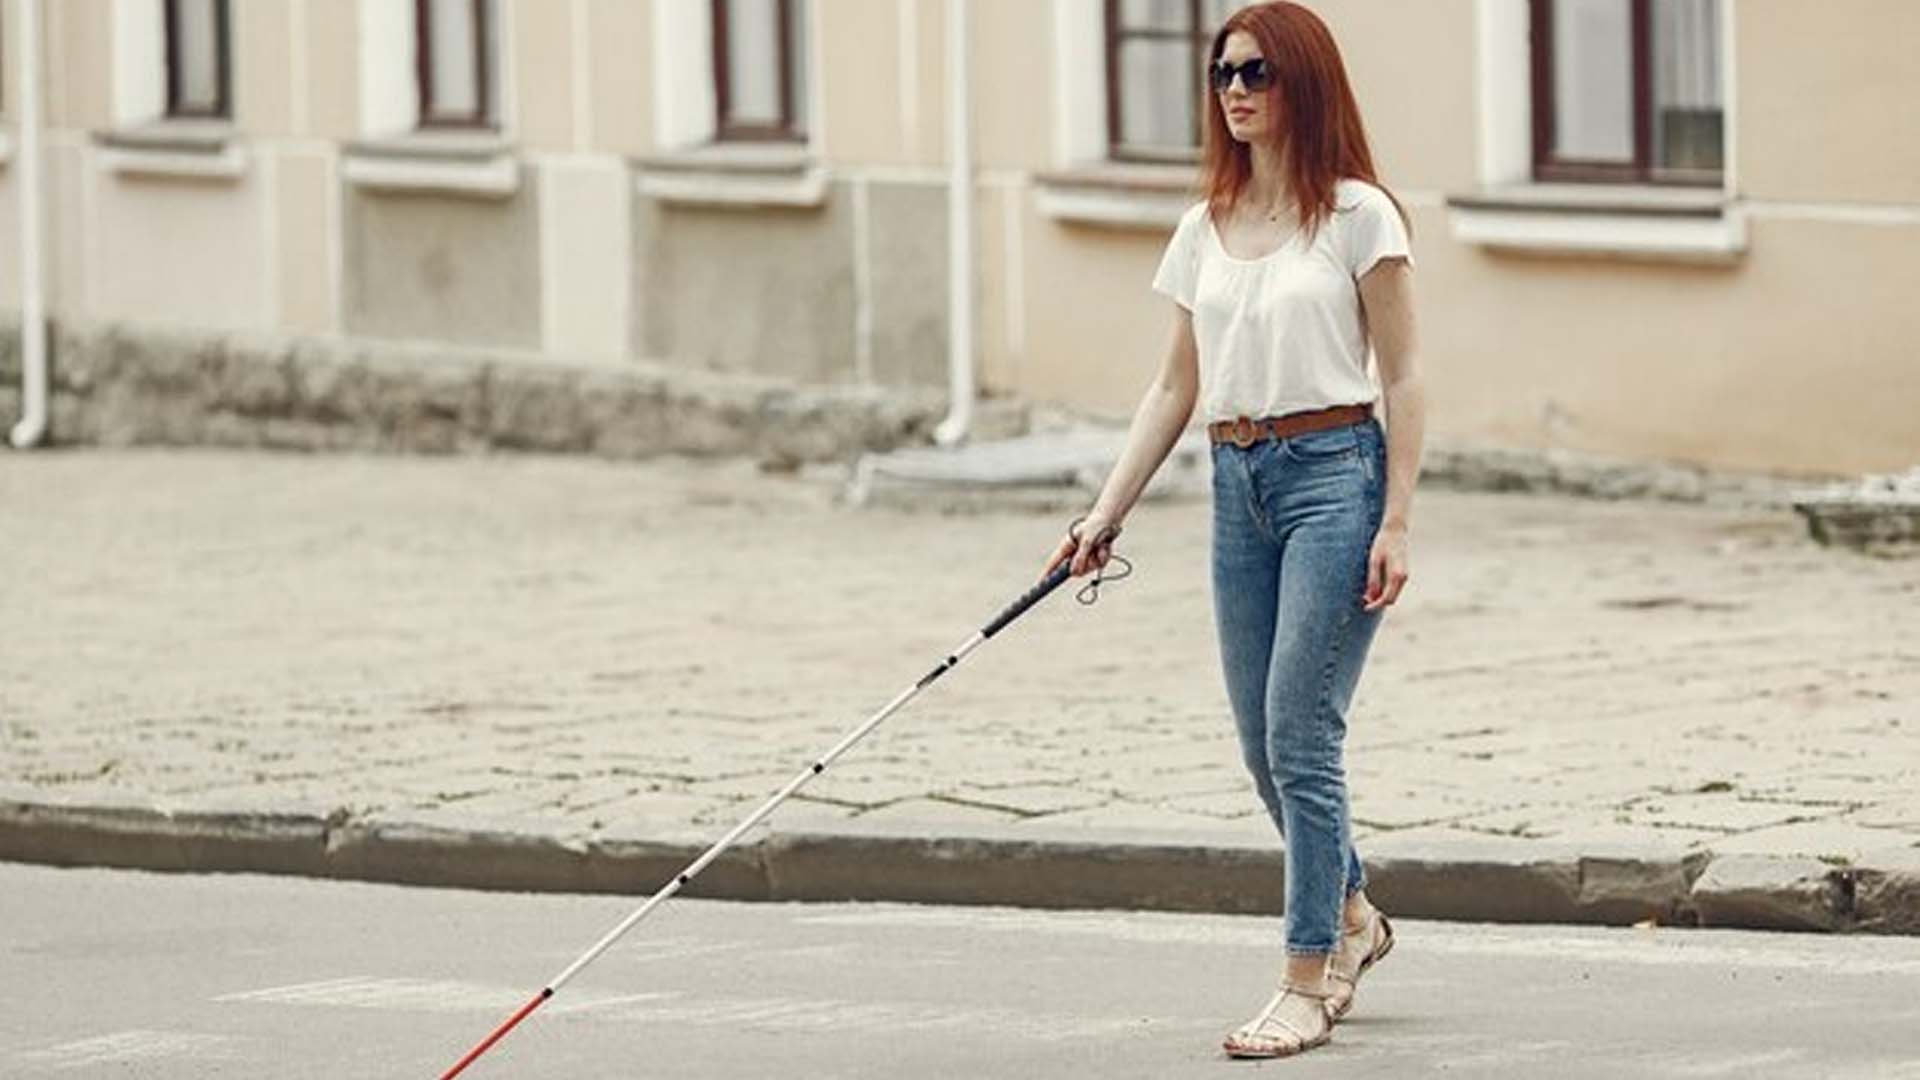 Blind Women Walking Alone on Road